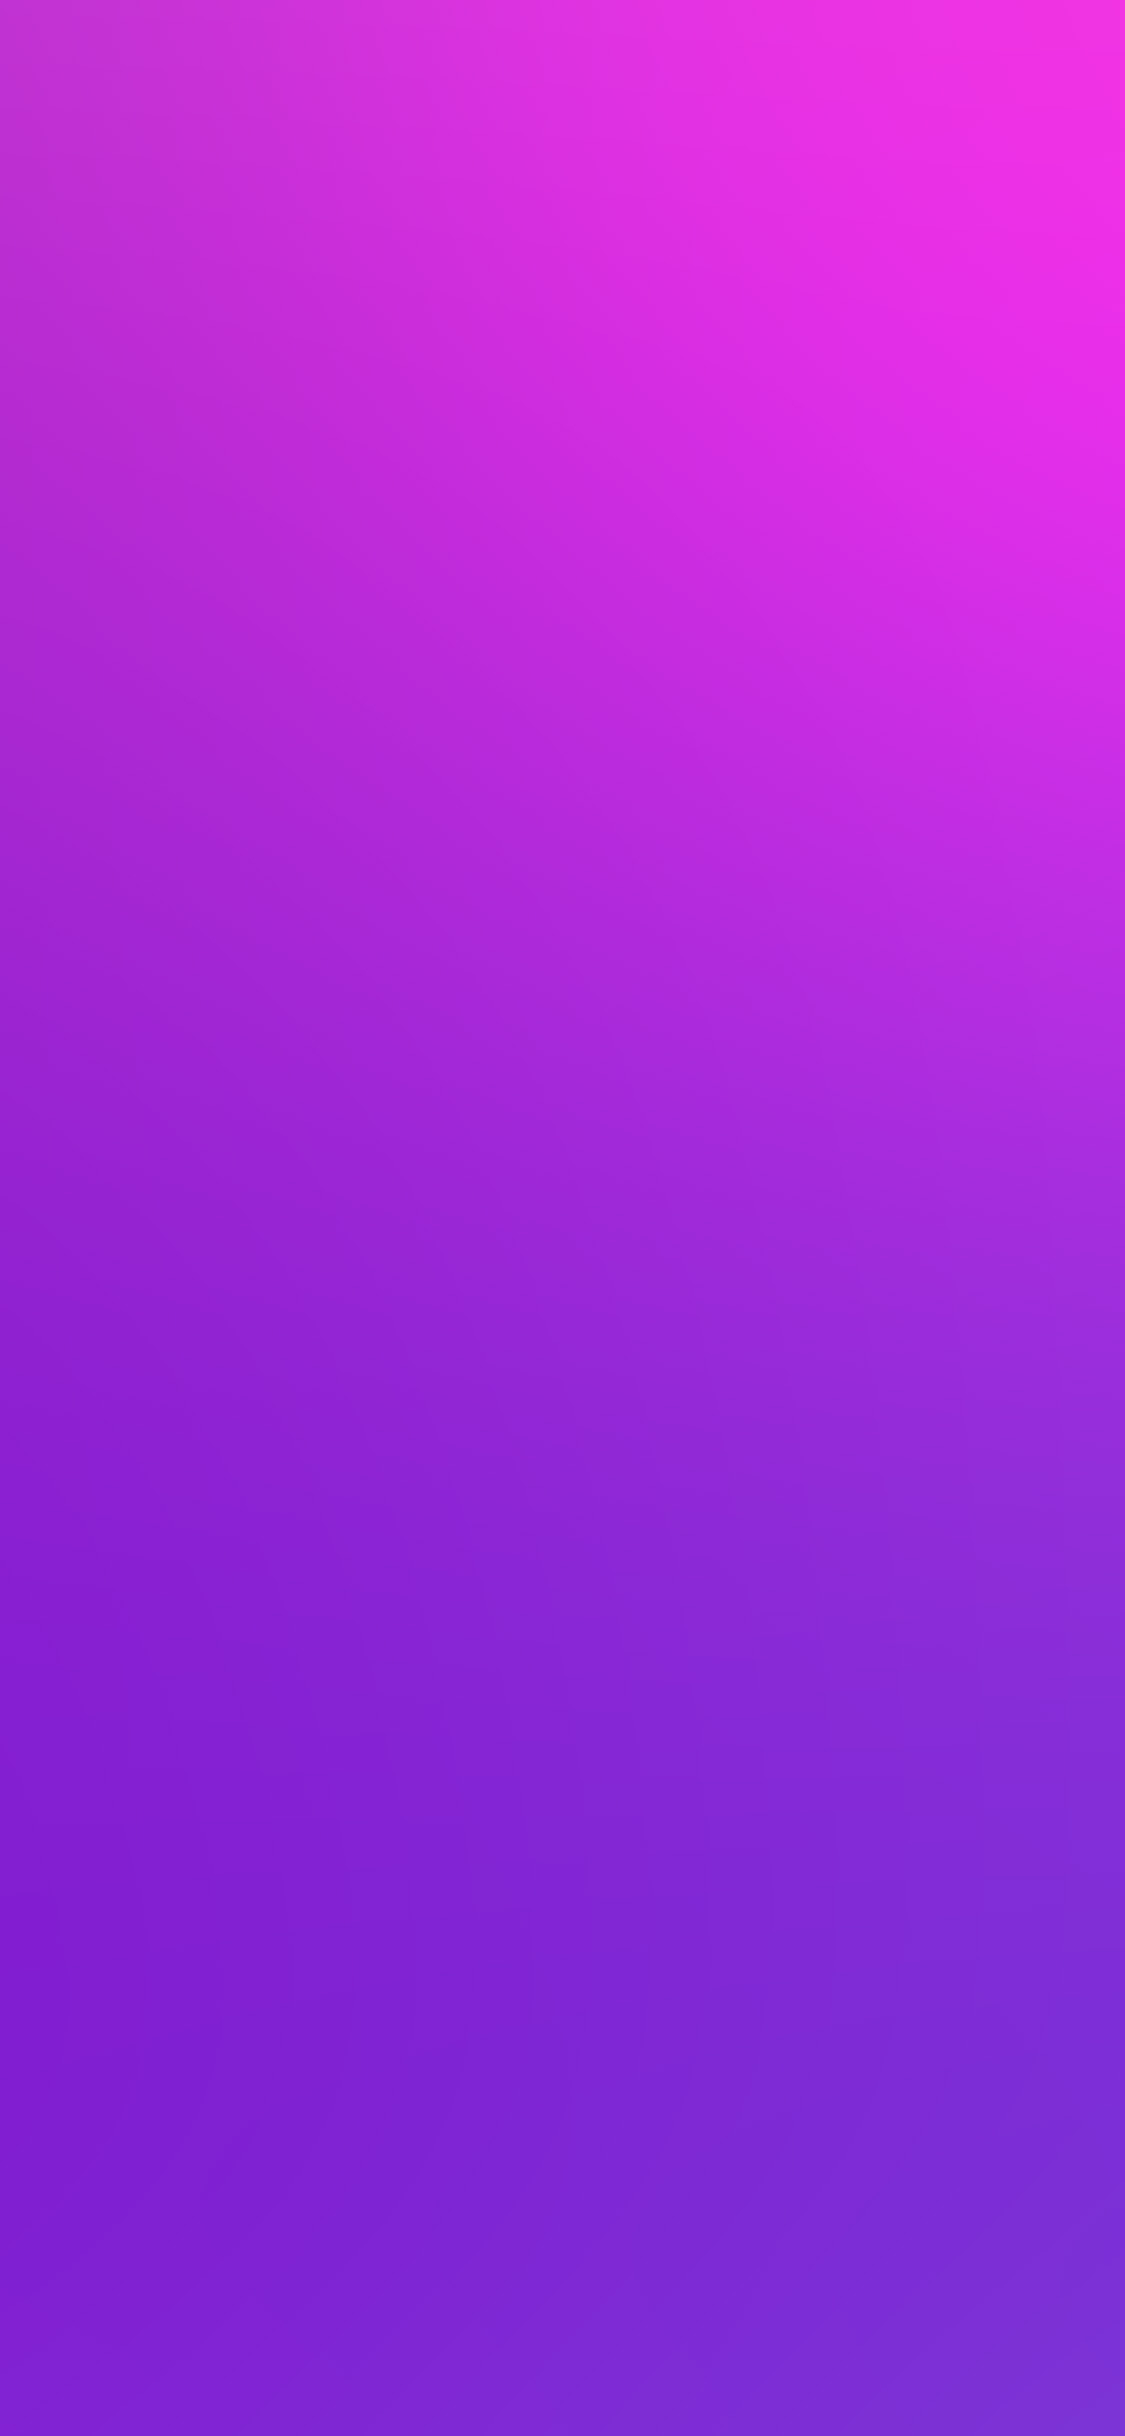 1125x2436 | iPhone11 wallpaper | sm88-purple-pink-blur-gradati